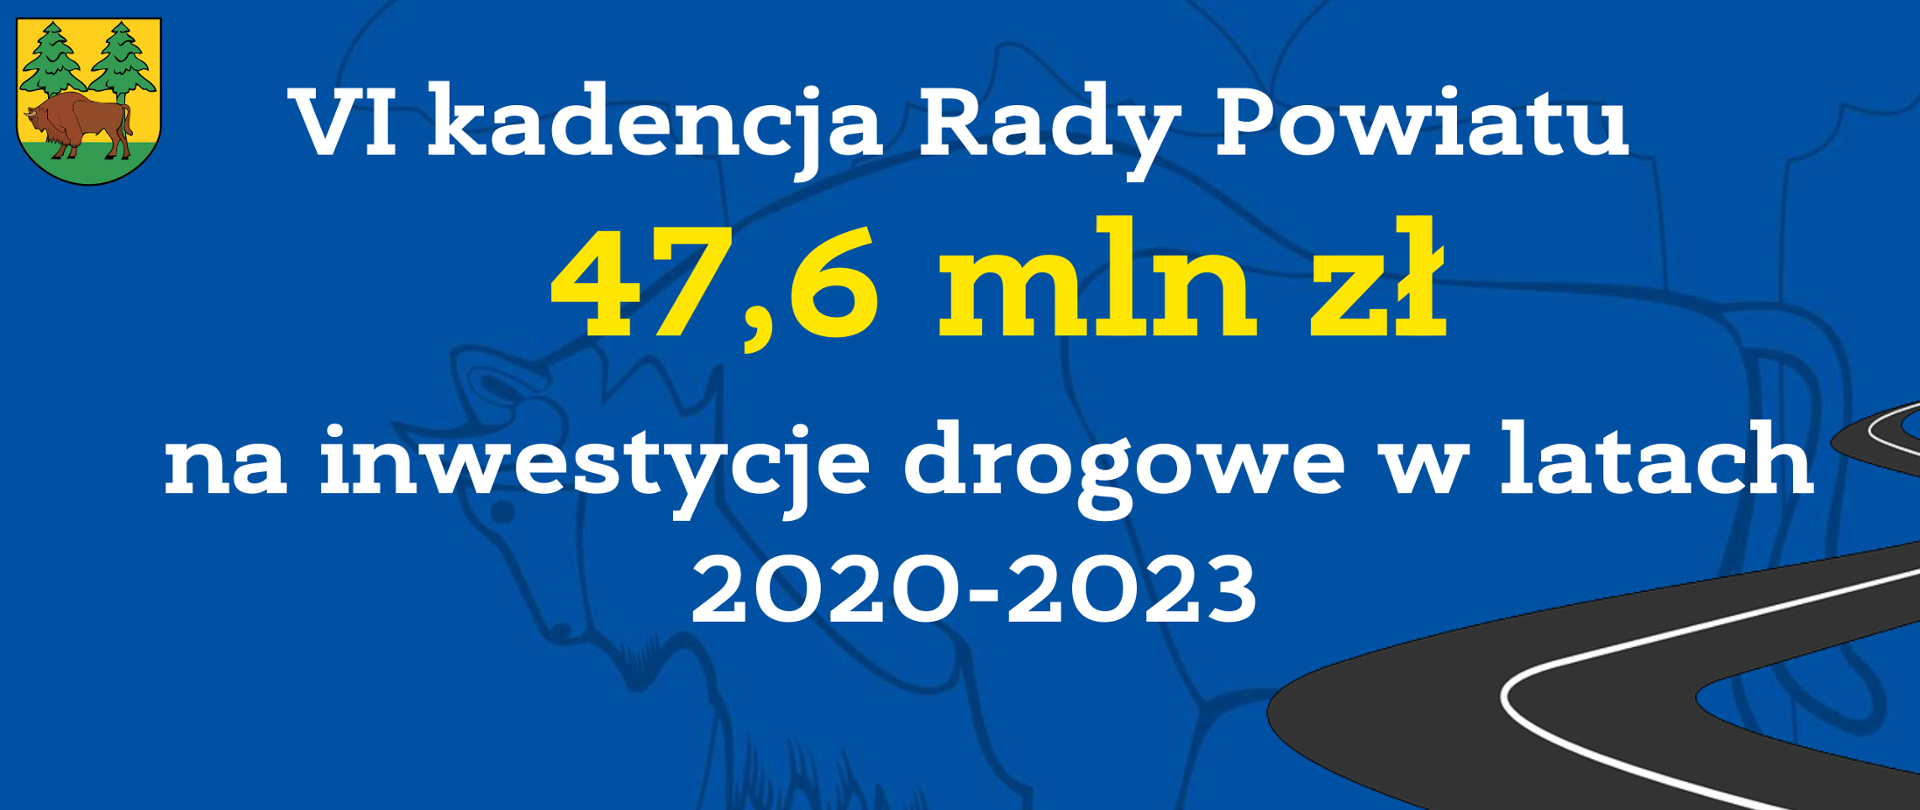 VI kadencja Rady Powiatu 47,6 mln zł na inwestycje drogowe w latach 2020-2023